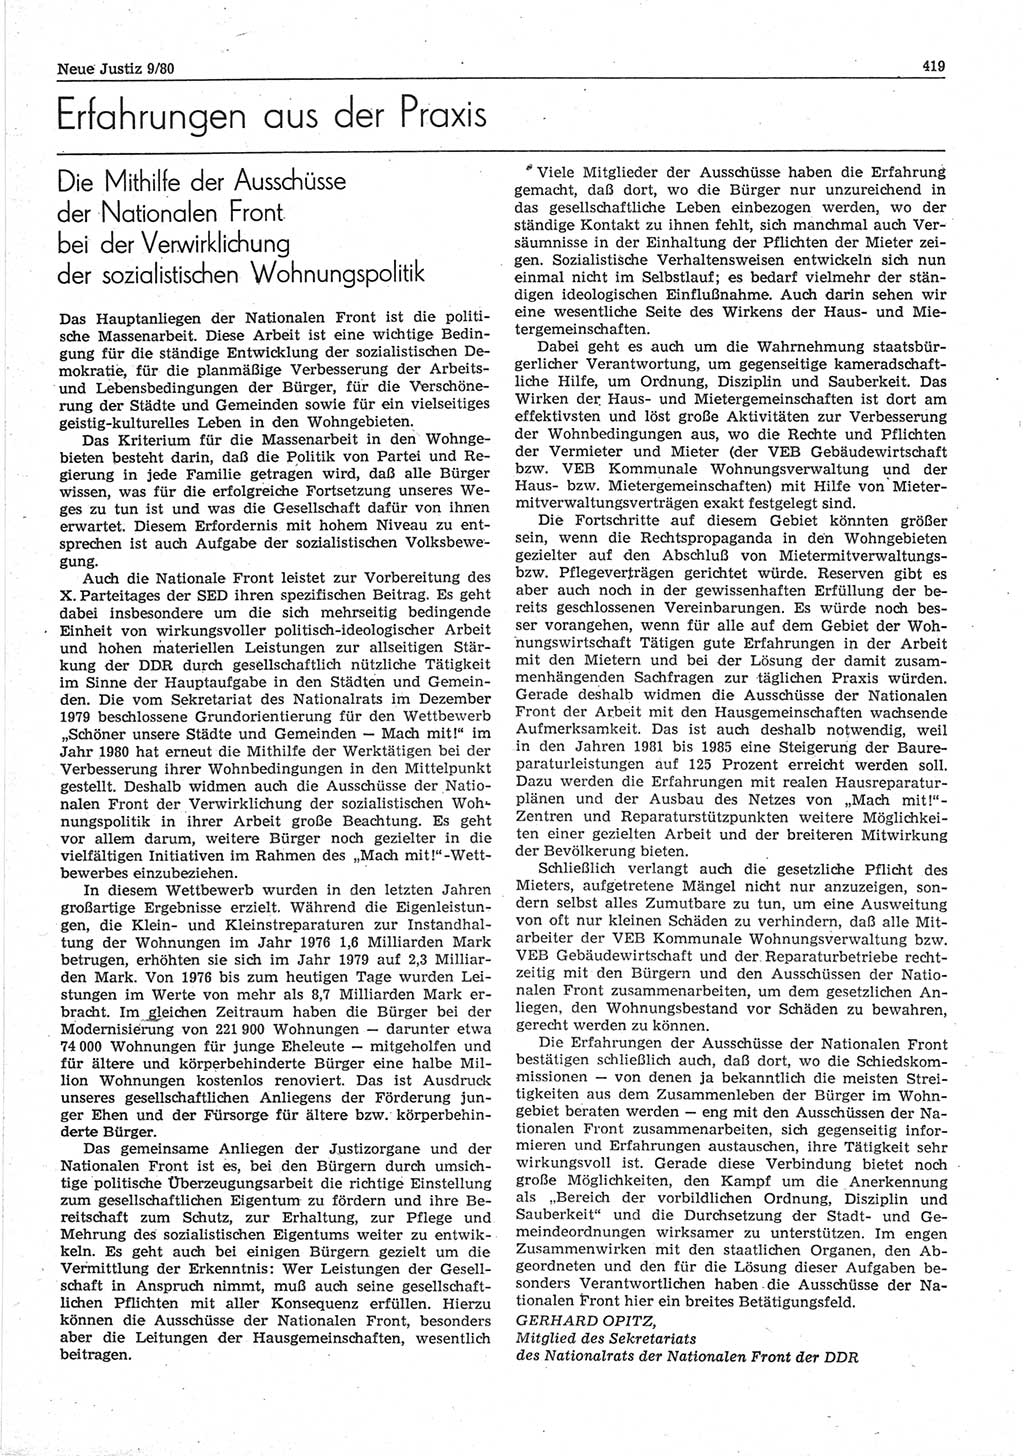 Neue Justiz (NJ), Zeitschrift für sozialistisches Recht und Gesetzlichkeit [Deutsche Demokratische Republik (DDR)], 34. Jahrgang 1980, Seite 419 (NJ DDR 1980, S. 419)